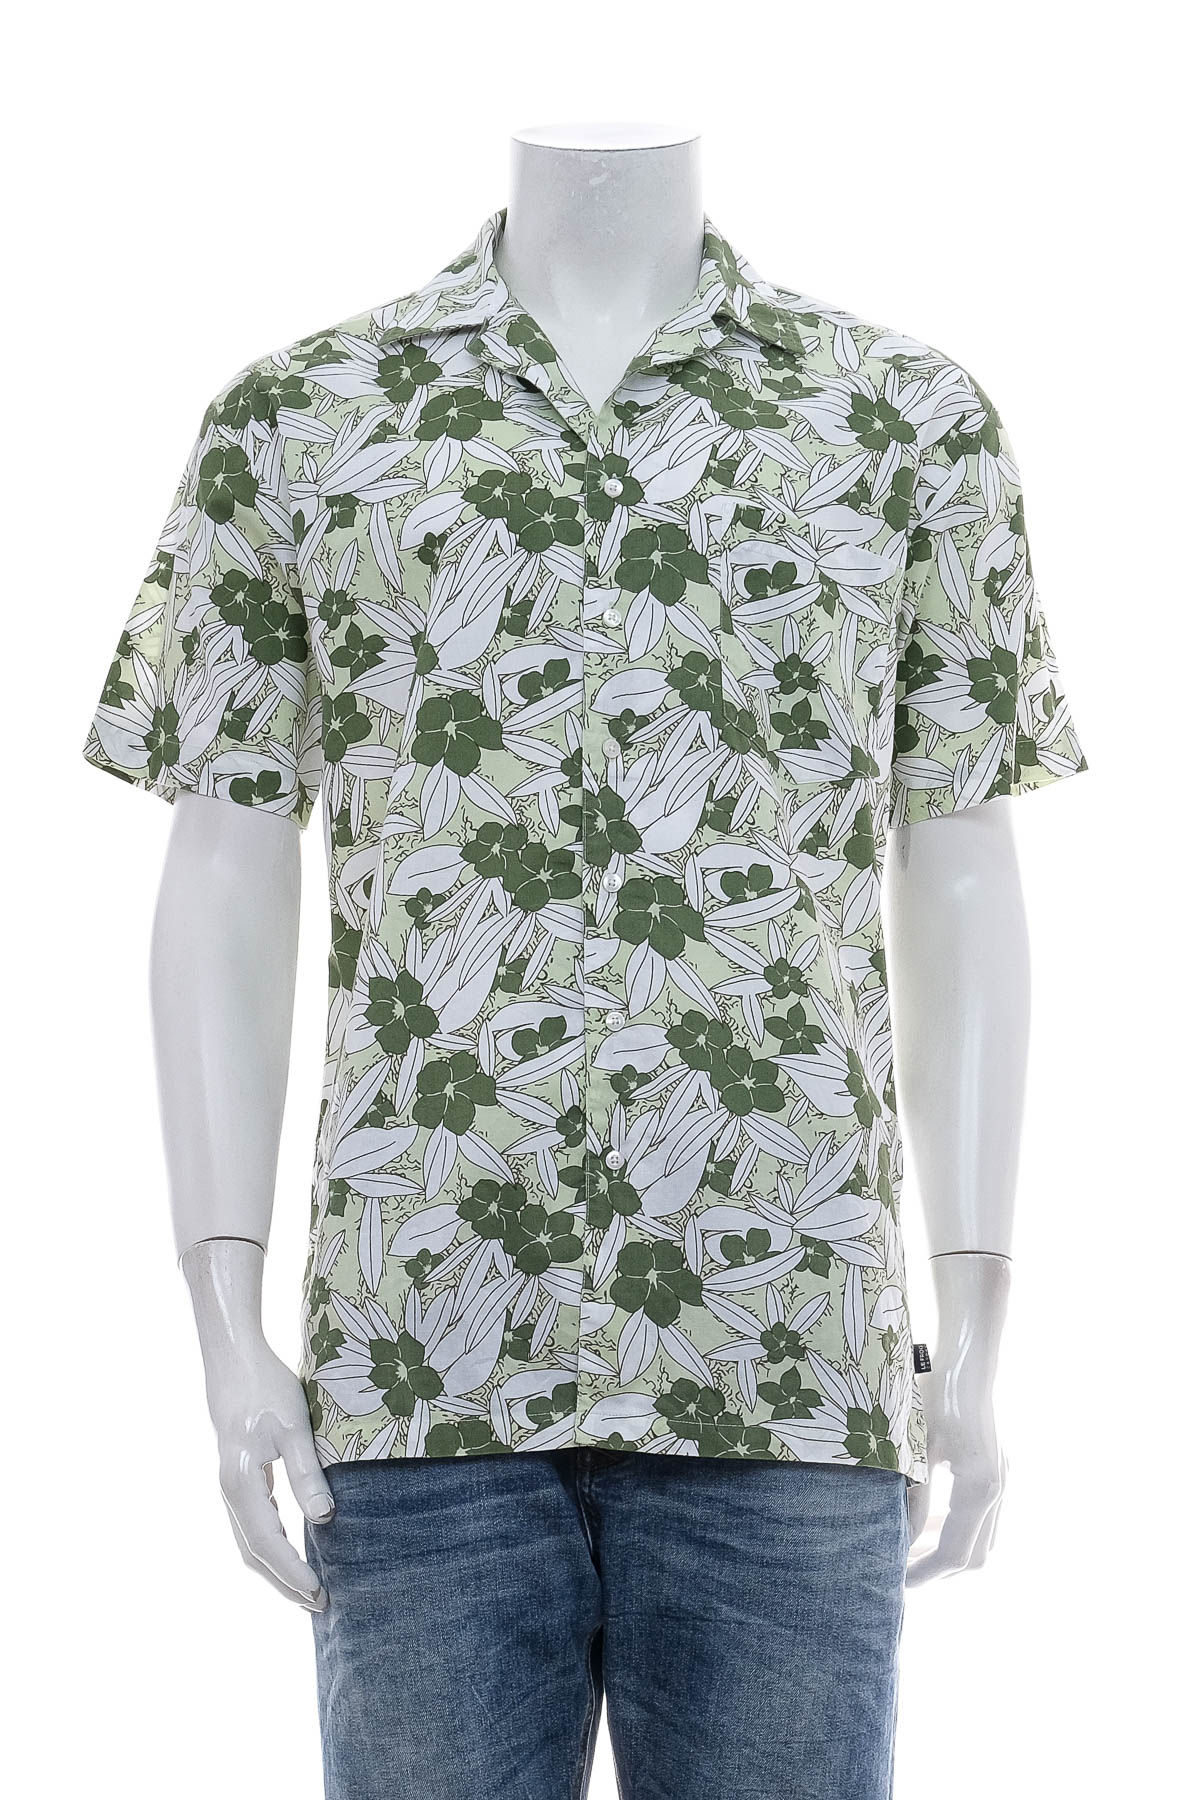 Ανδρικό πουκάμισο - LE FROG - 0